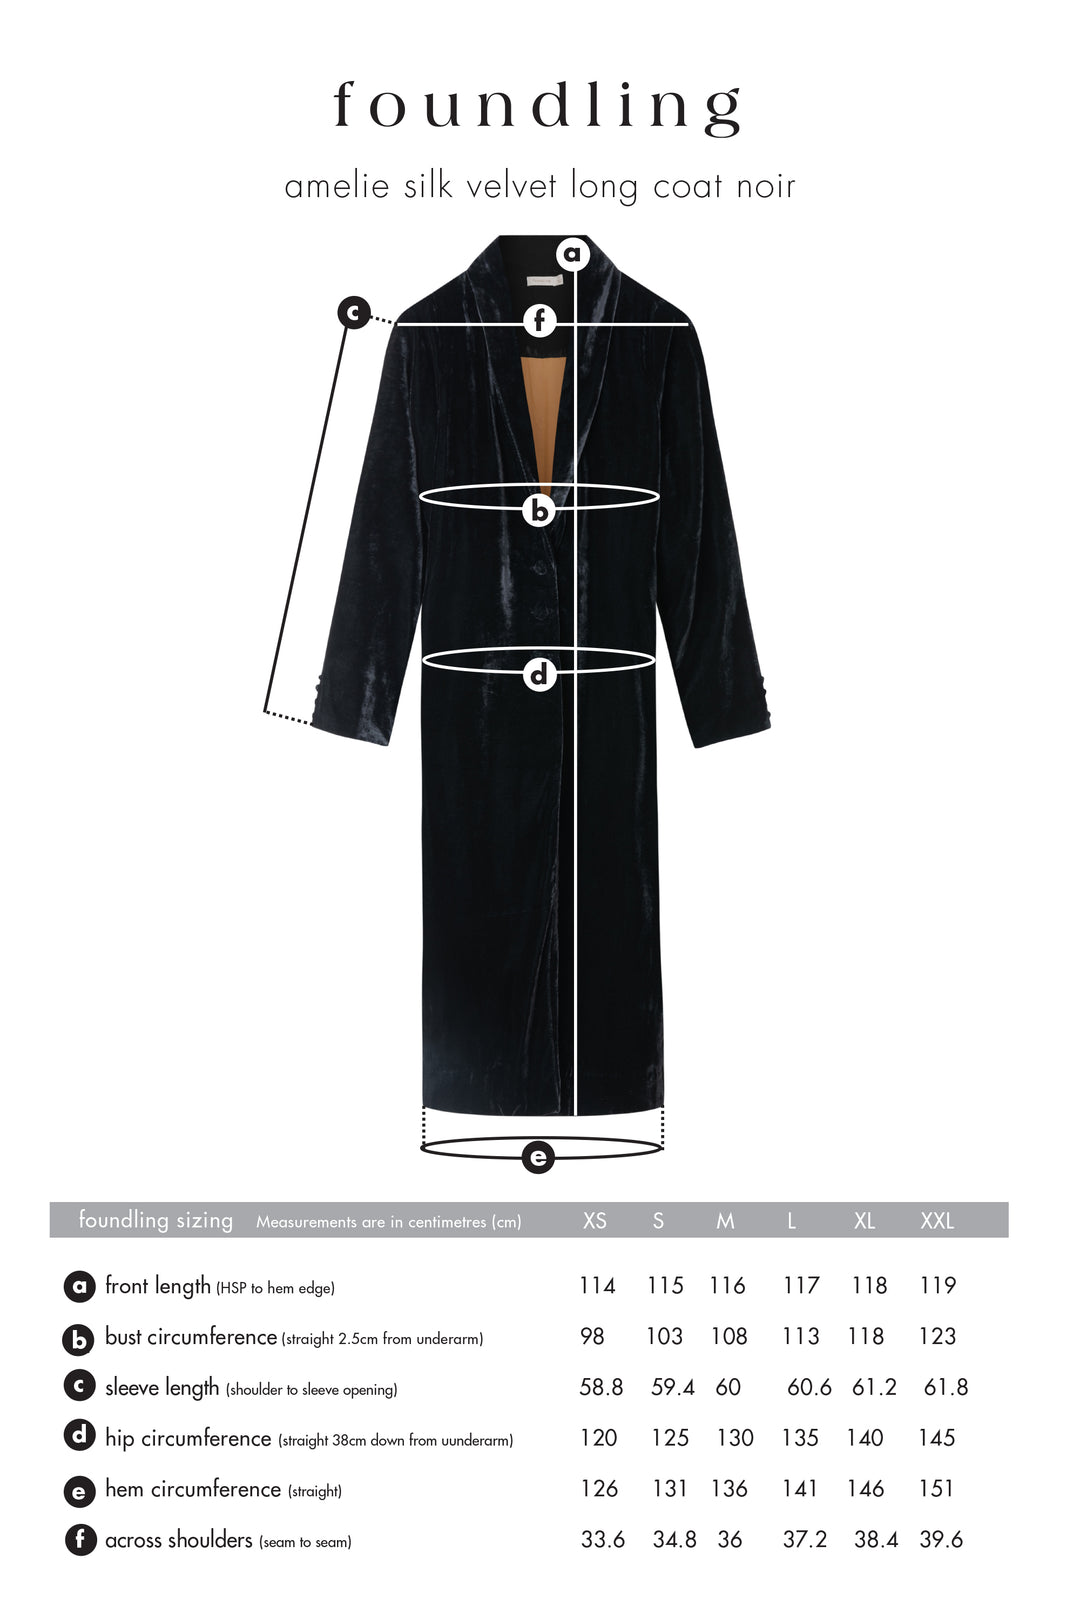 fully lined black silk velvet coat foundling size guide